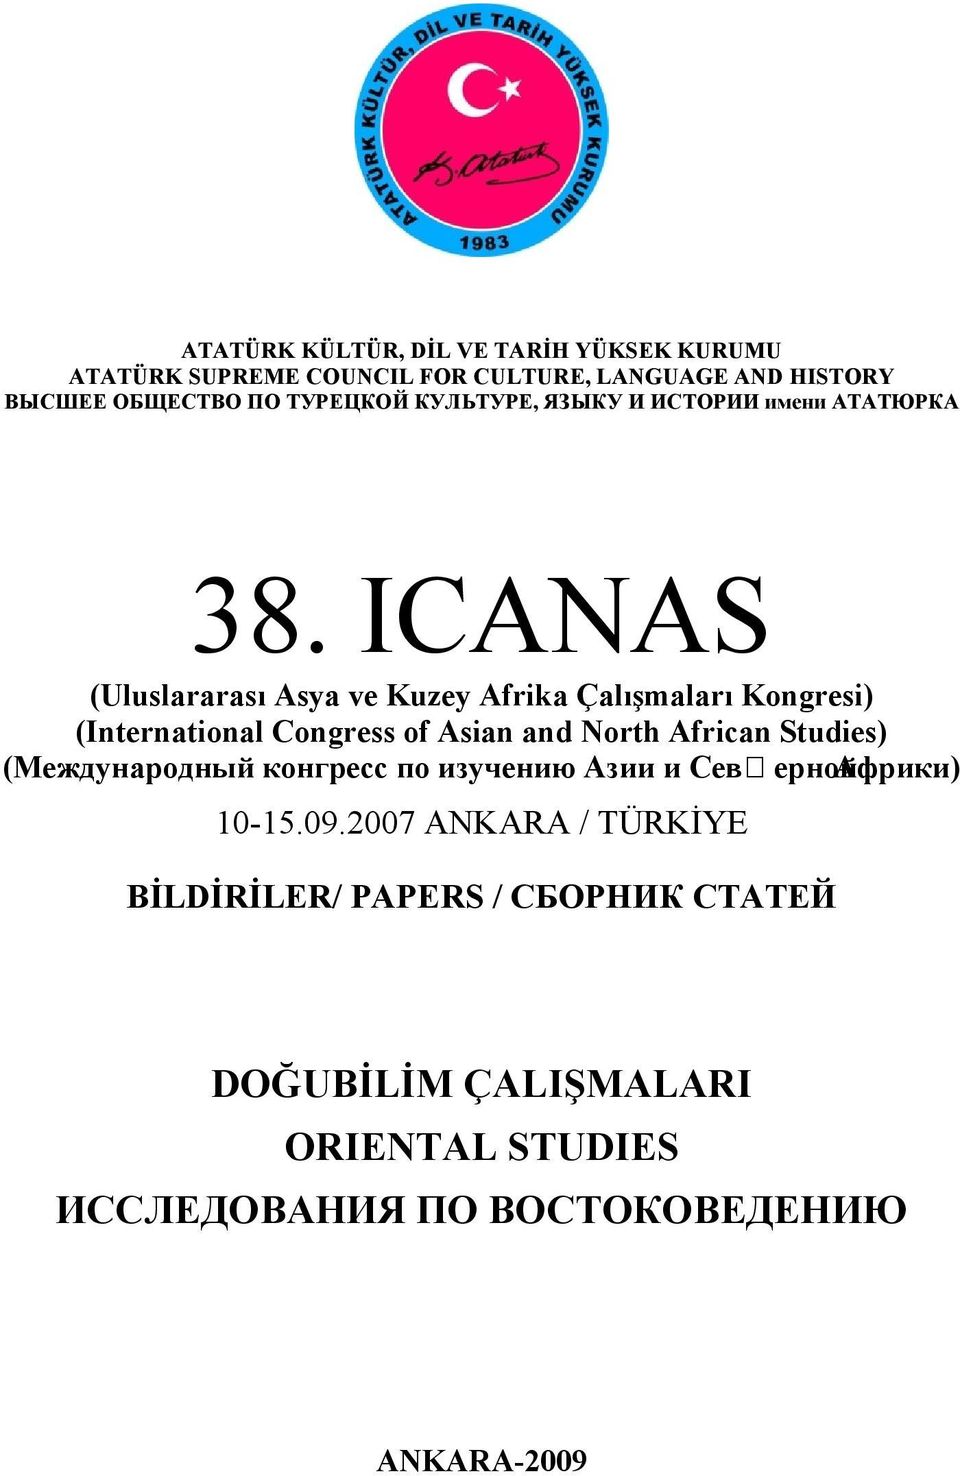 ICANAS (Uluslararası Asya ve Kuzey Afrika Çalışmaları Kongresi) (International Congress of Asian and North African Studies)